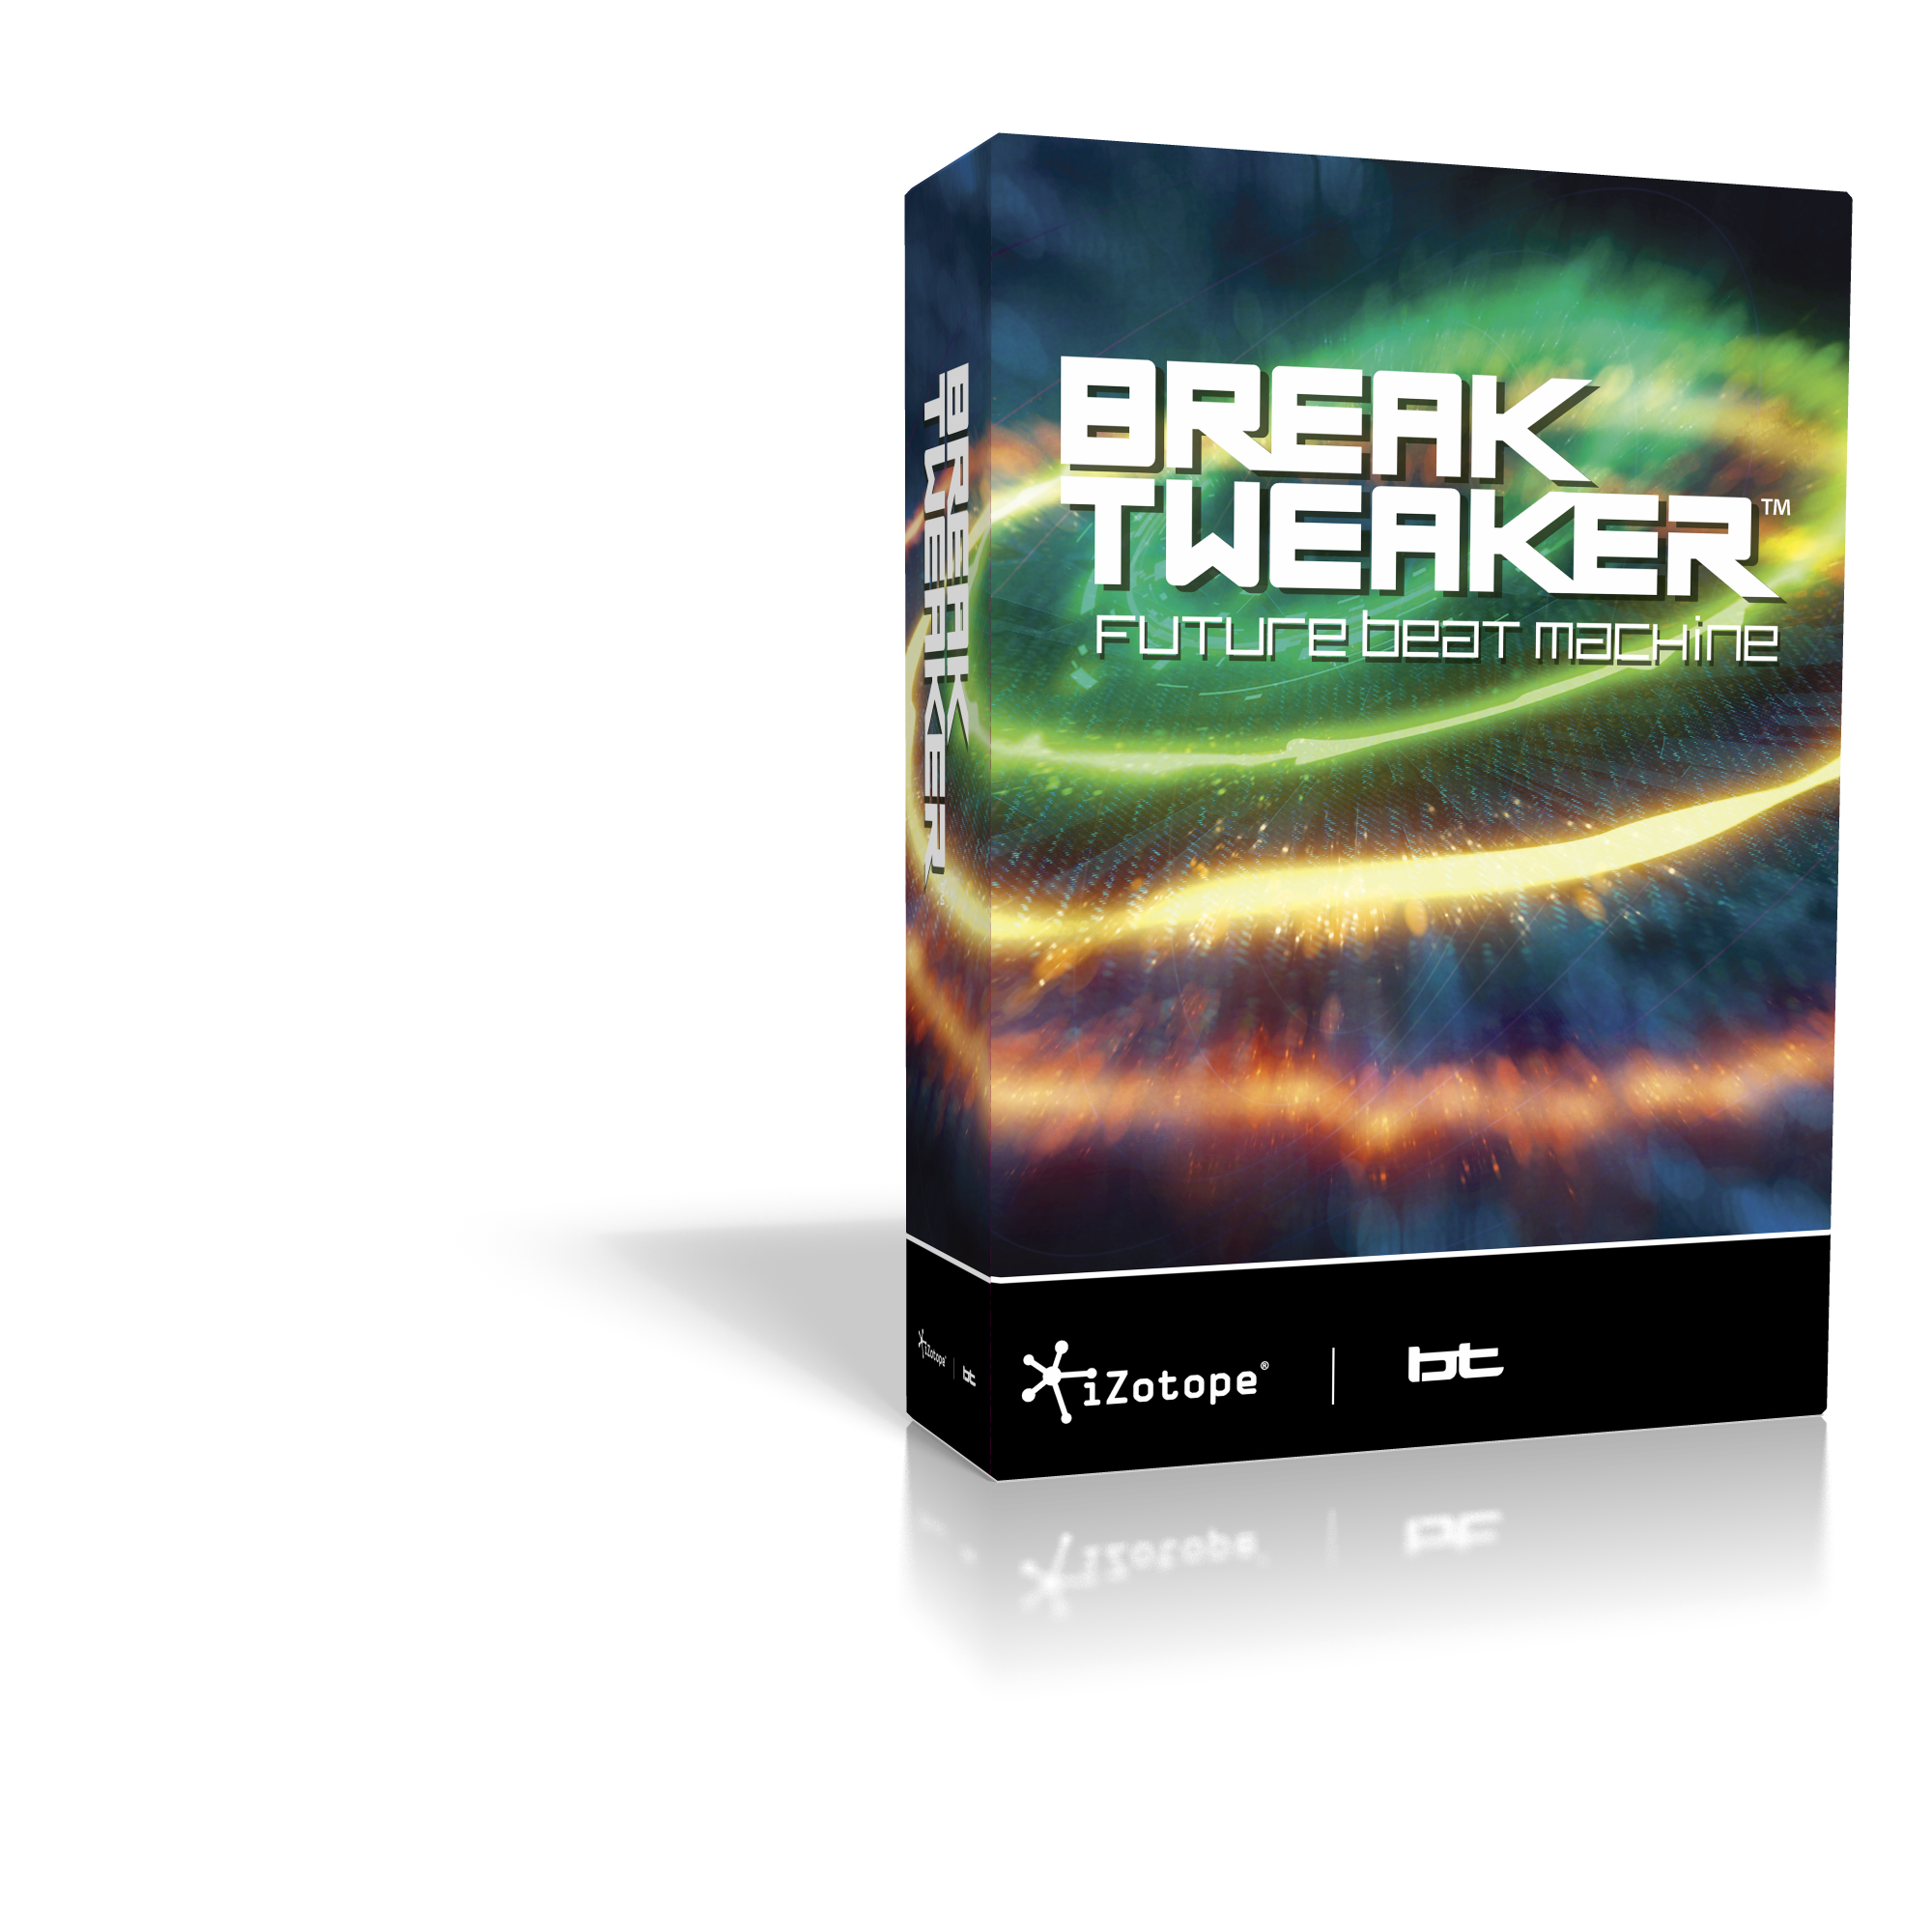 iZotope_BreakTweaker_Box